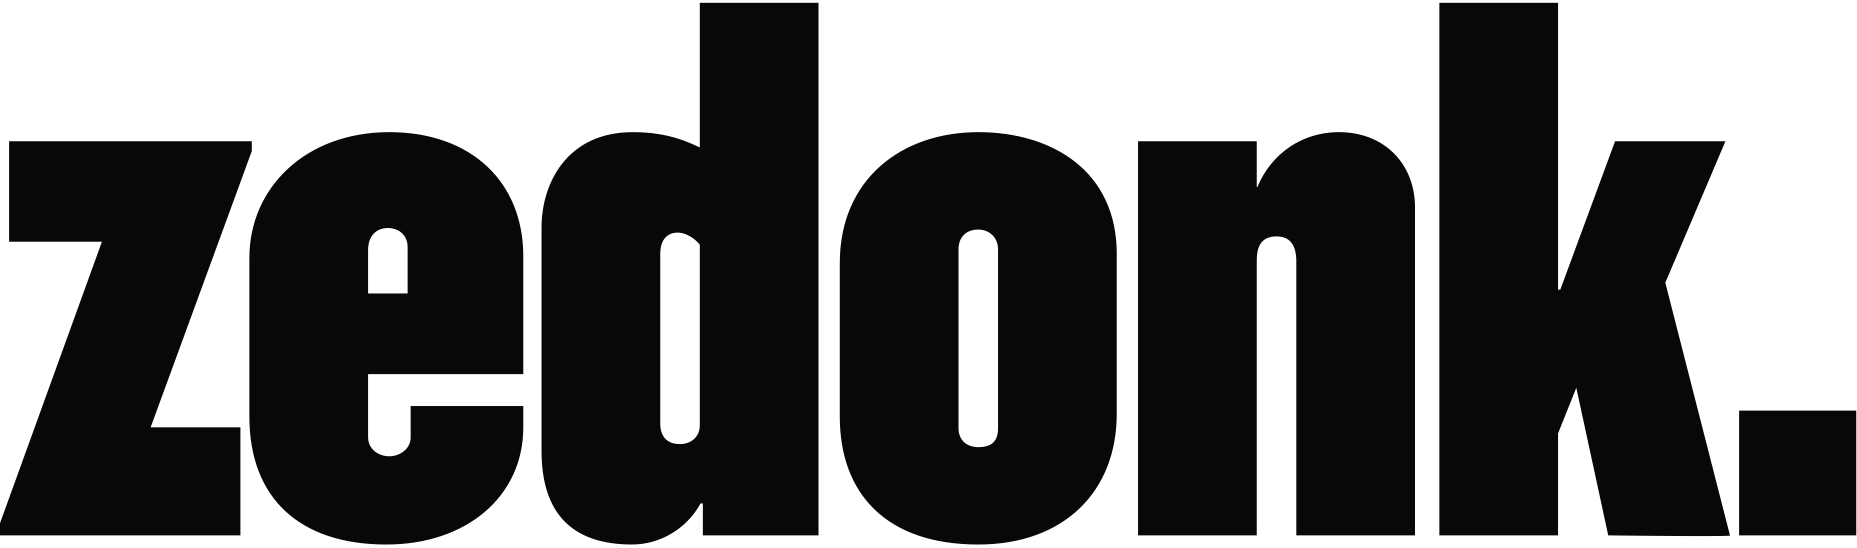 Zedonk logo